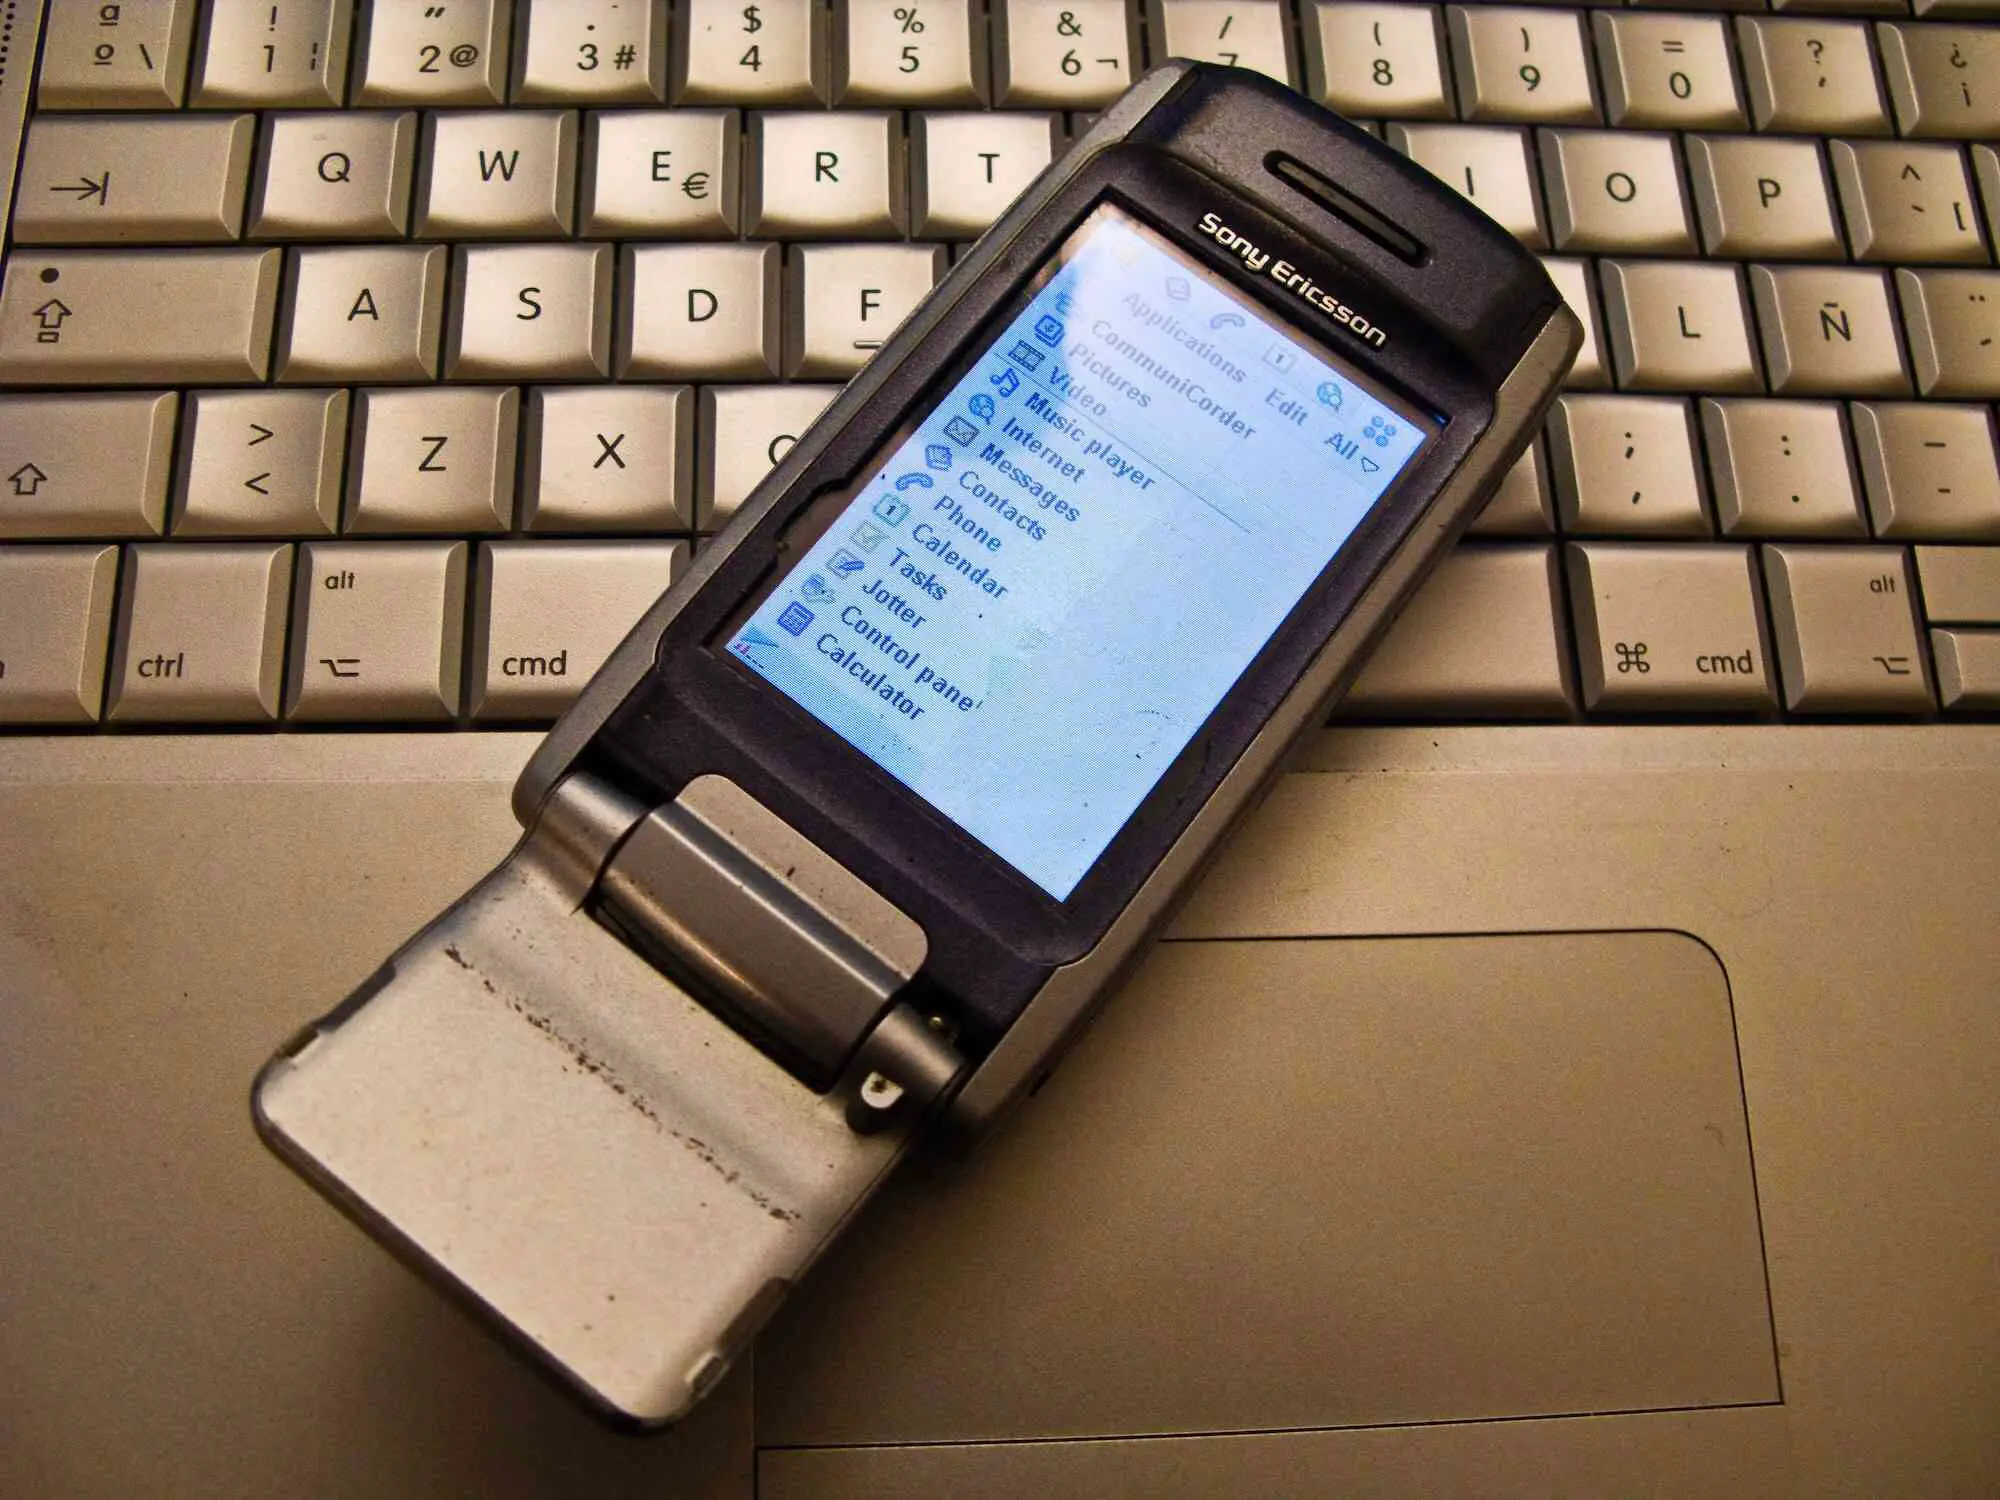 Foto de um velho celular Sony Ericsson apoiado em um laptop